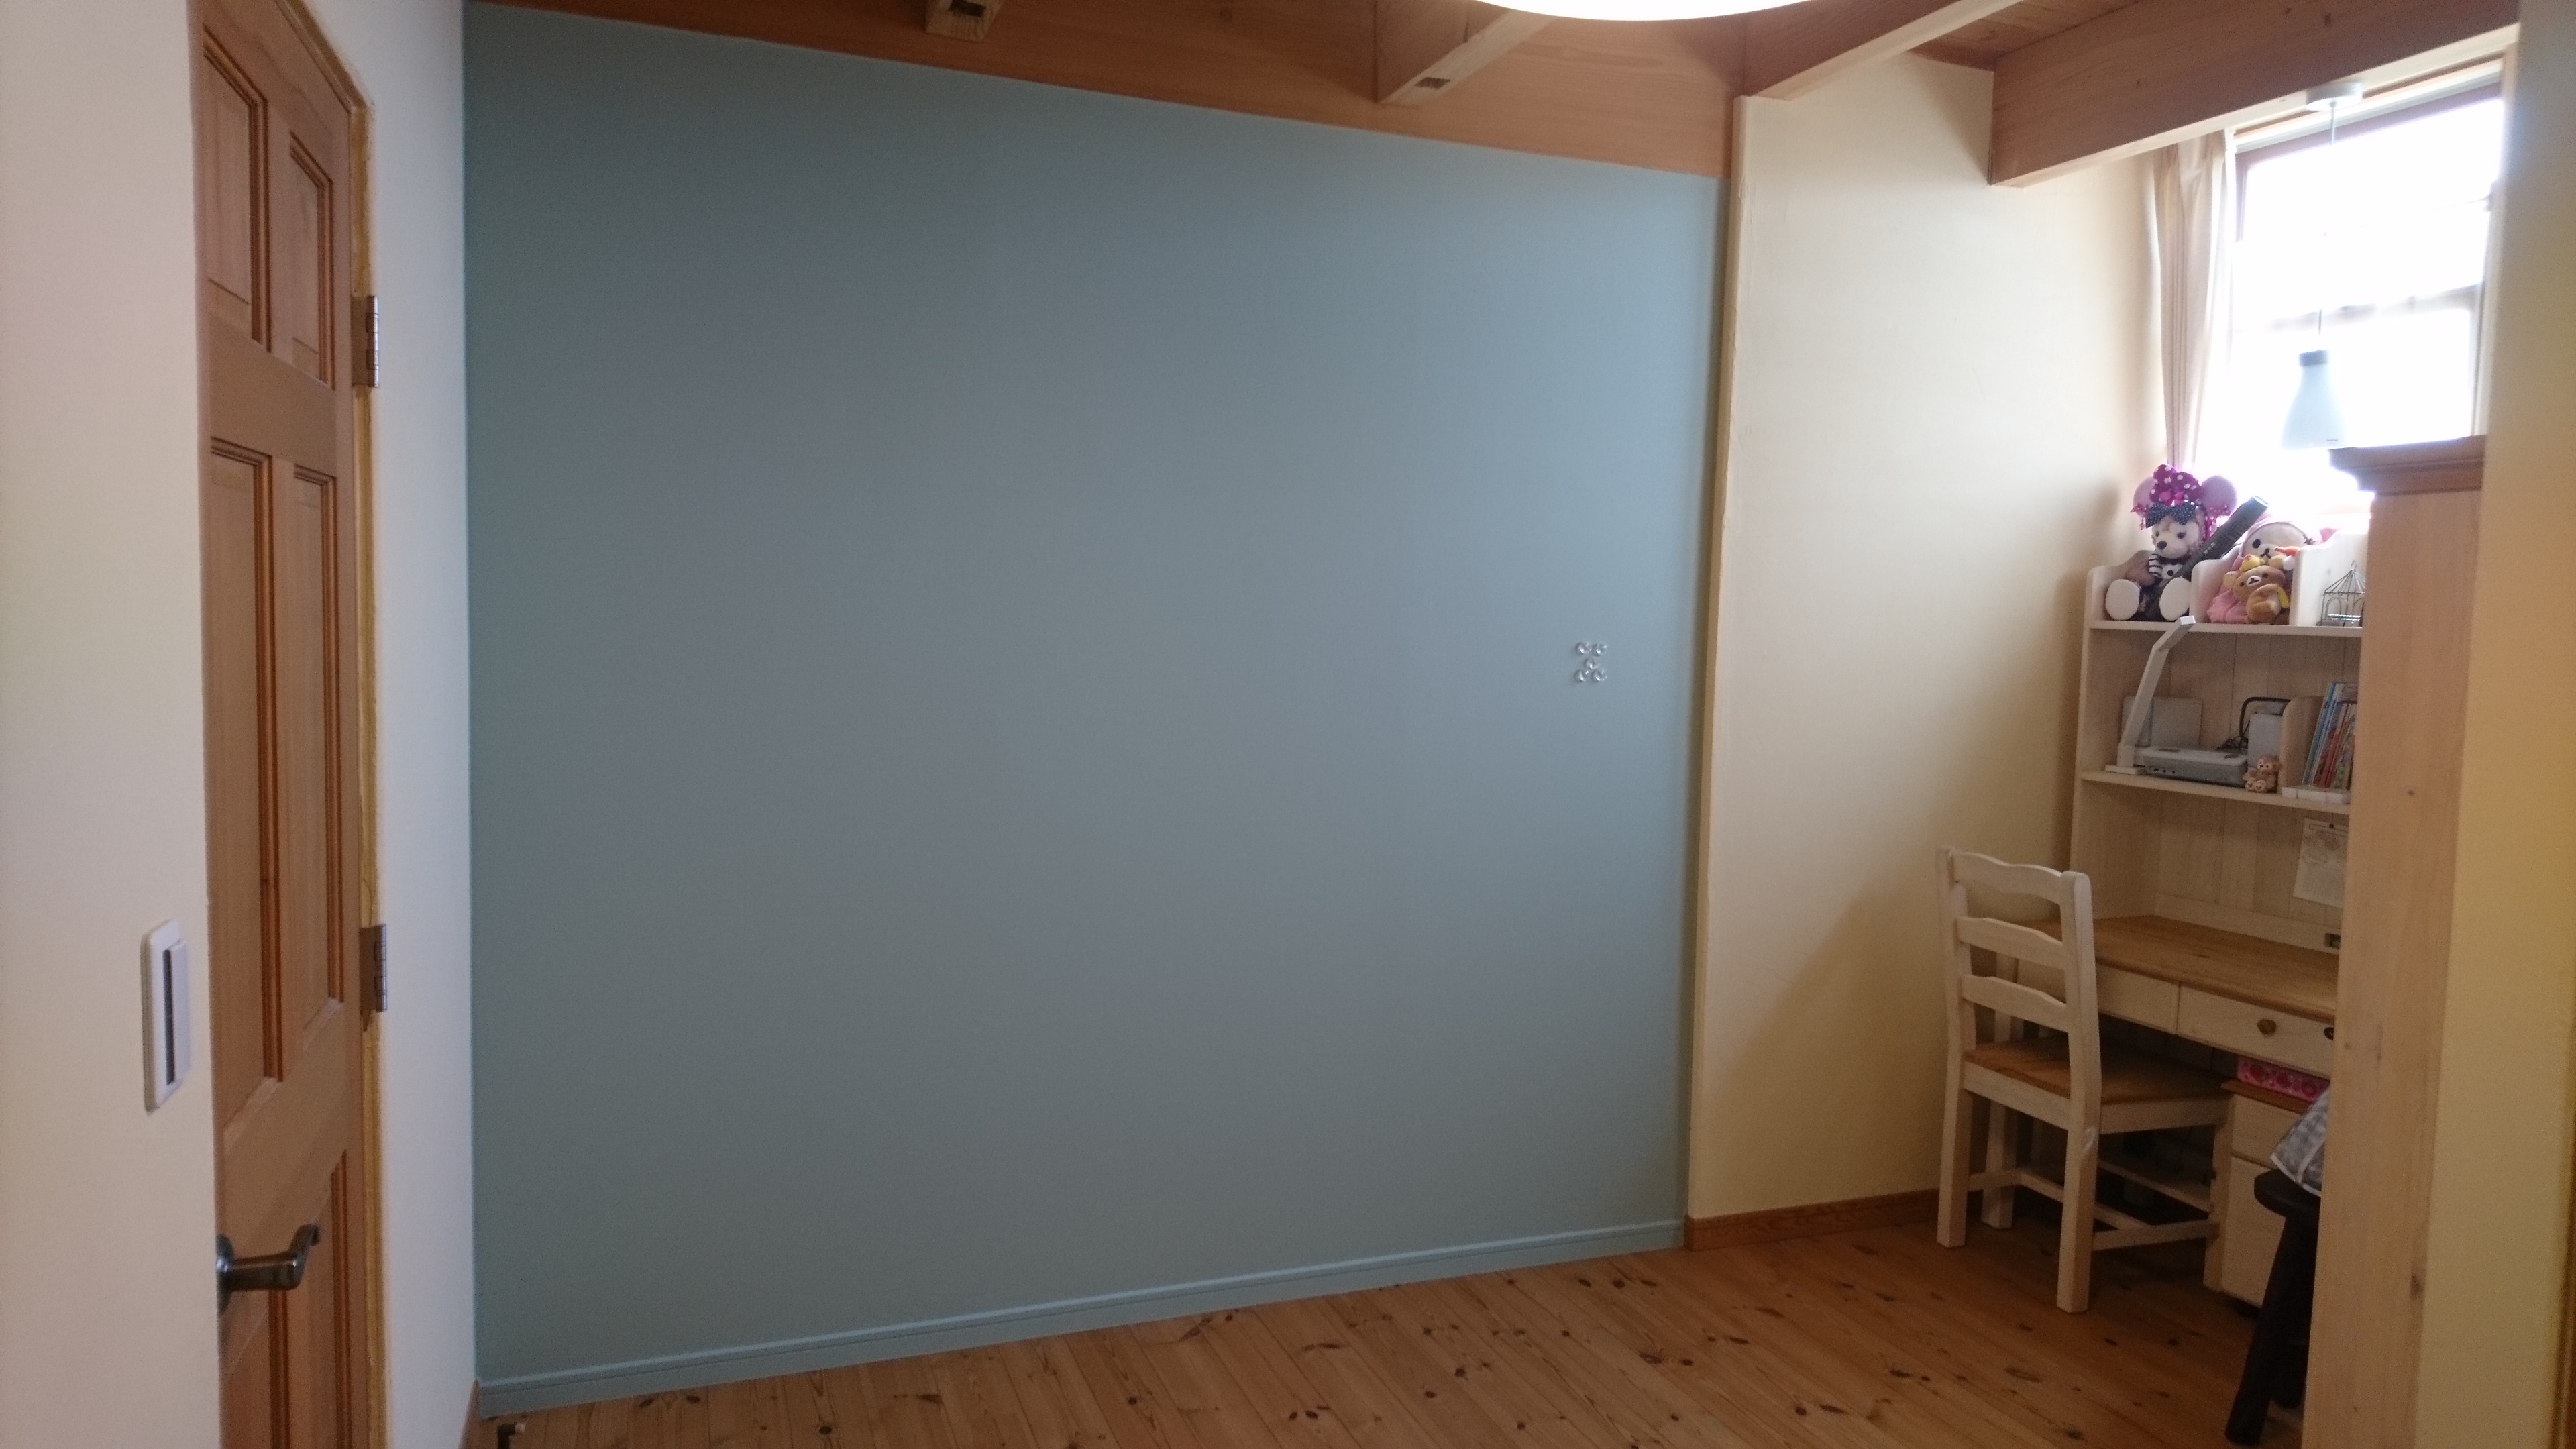 夏休み 子供部屋の壁を塗る 女性プランナーのブログ